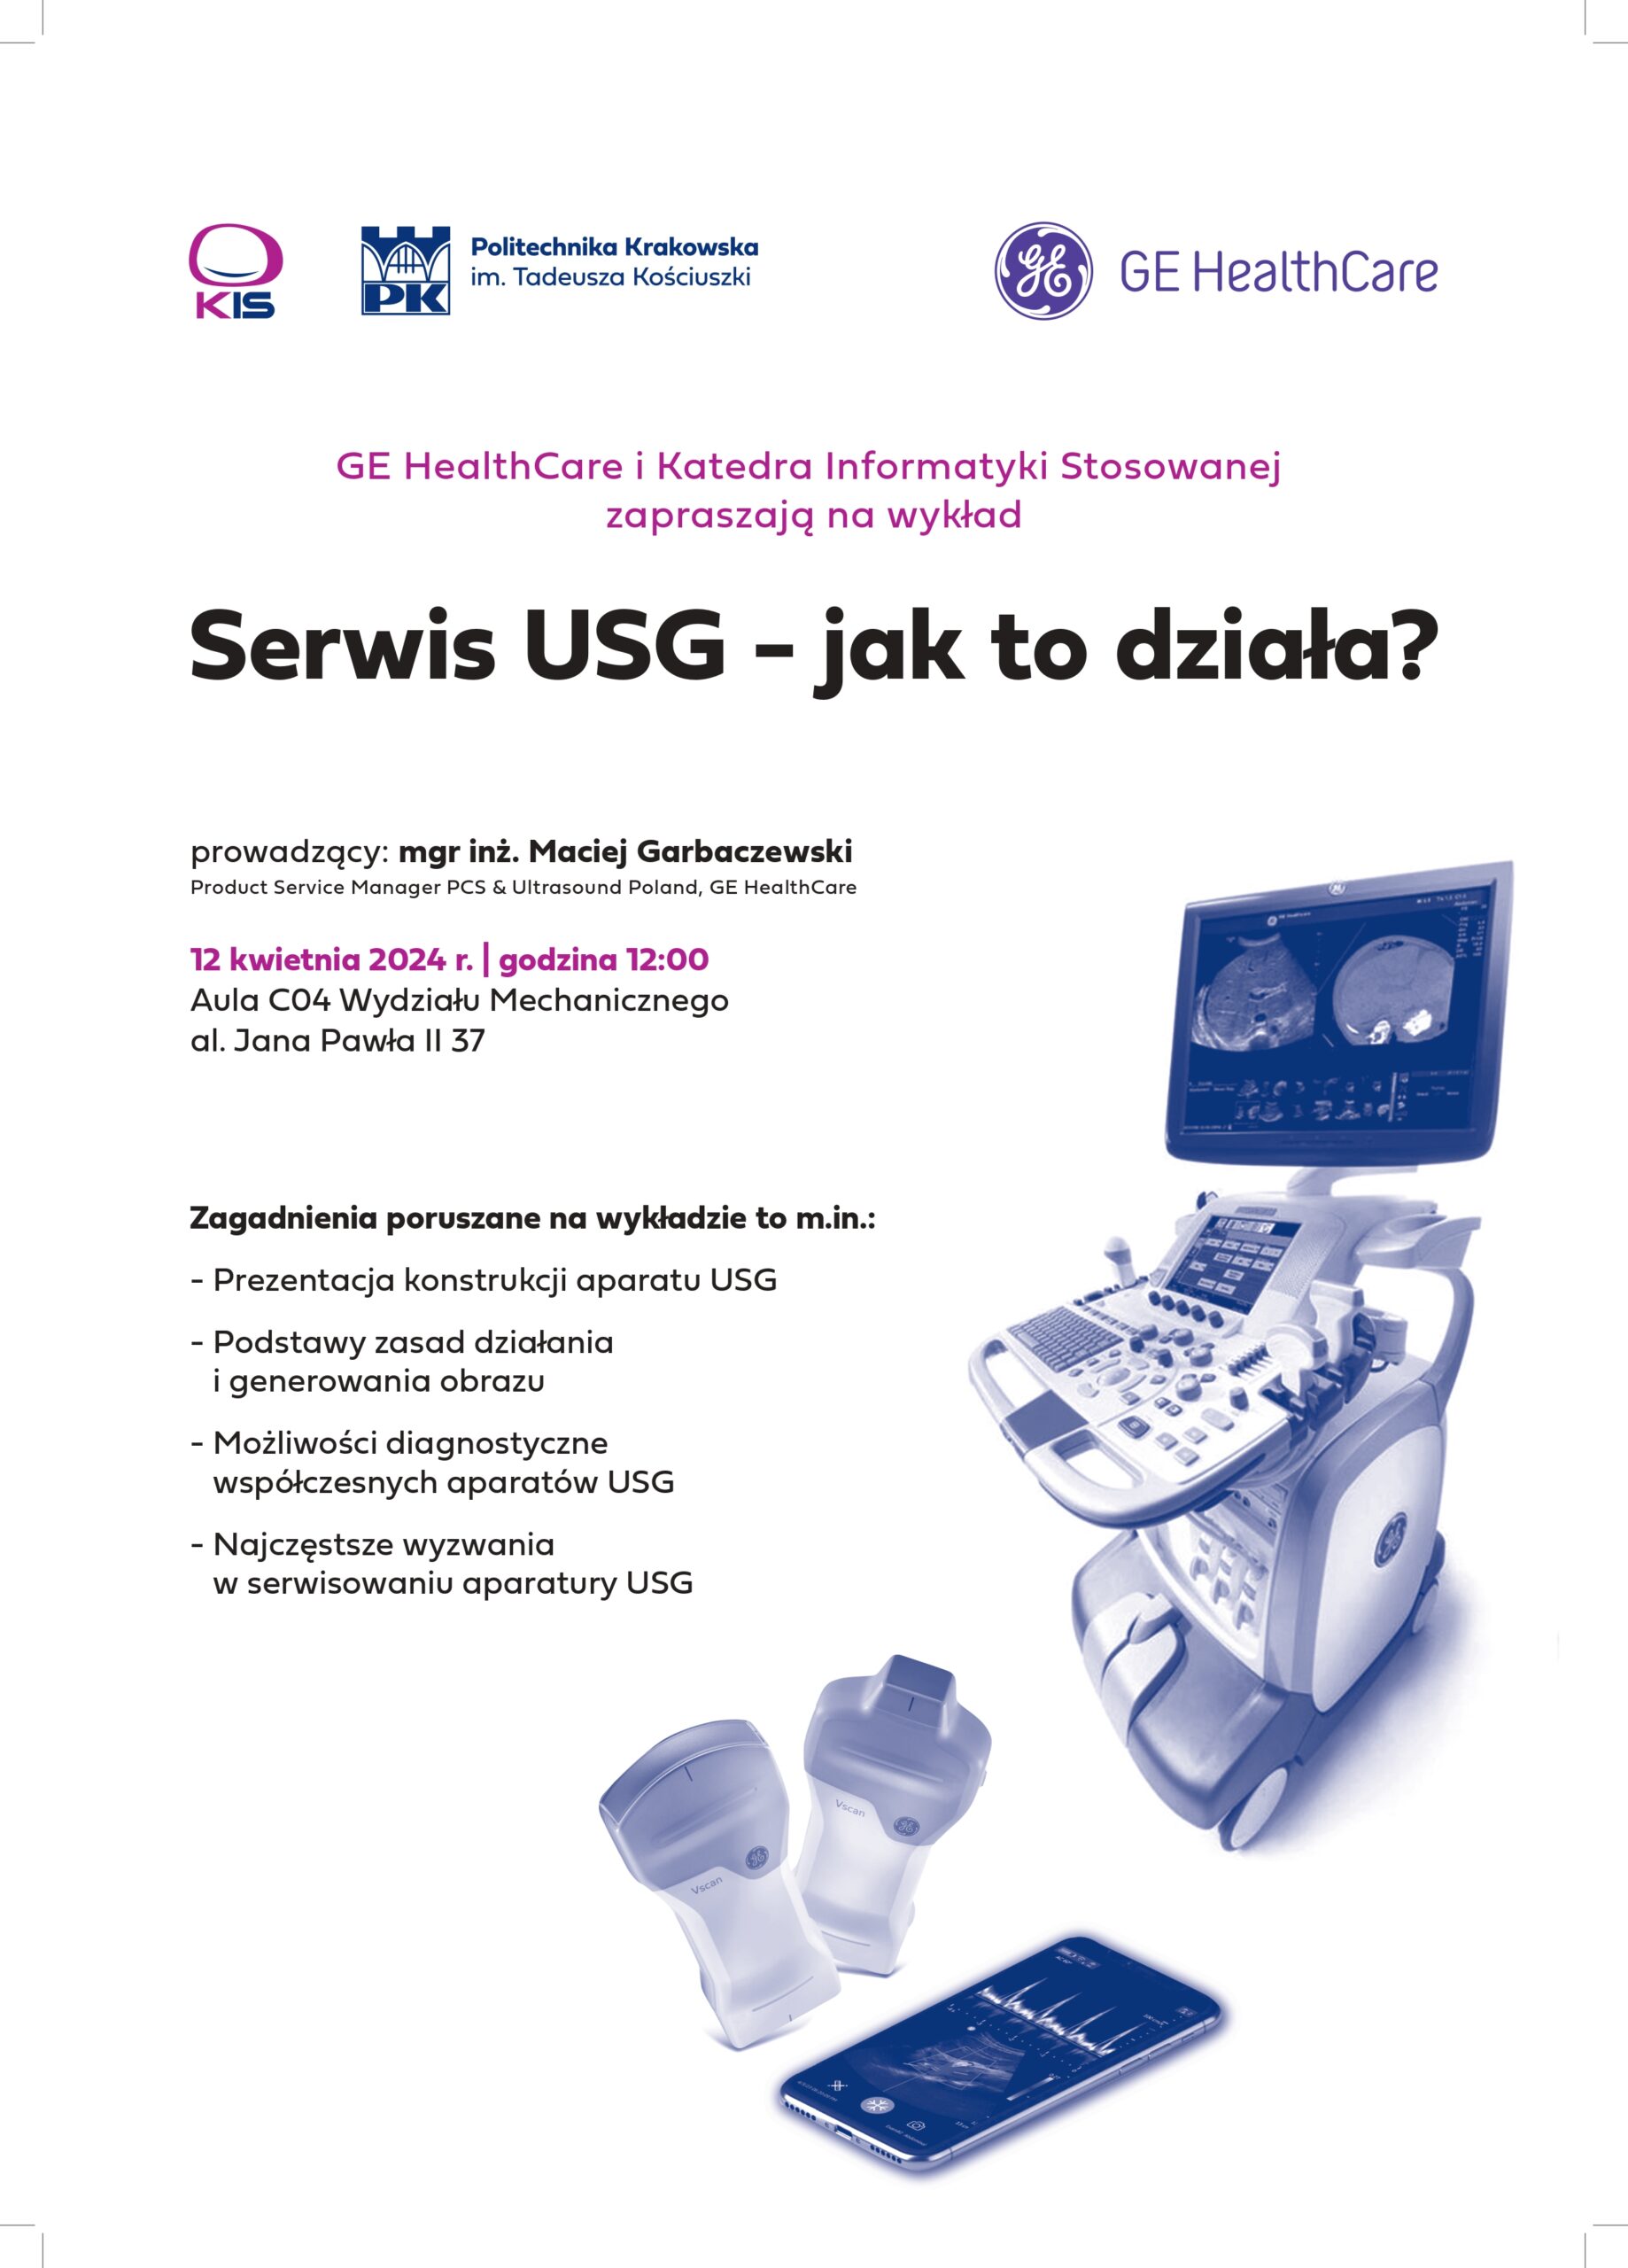 Serwis USG – jak to działa? – spotkanie z przedstawicielem GE HealthCare